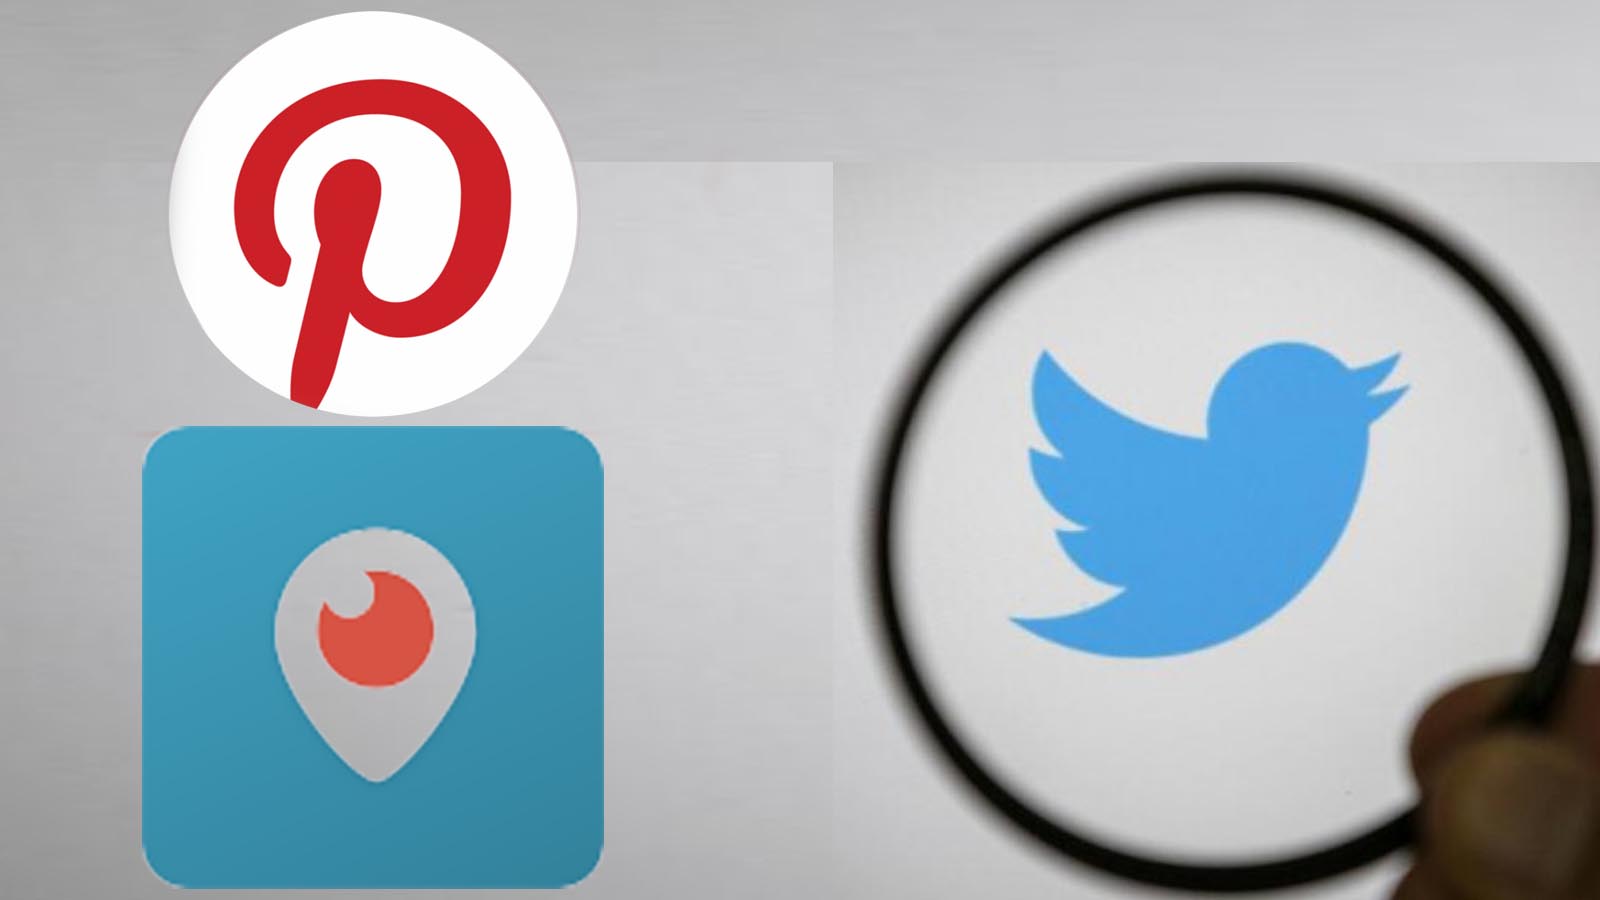 Türkiye'de temsilci atamayan Twitter, Periscope ve Pinterest'e reklam yasağı